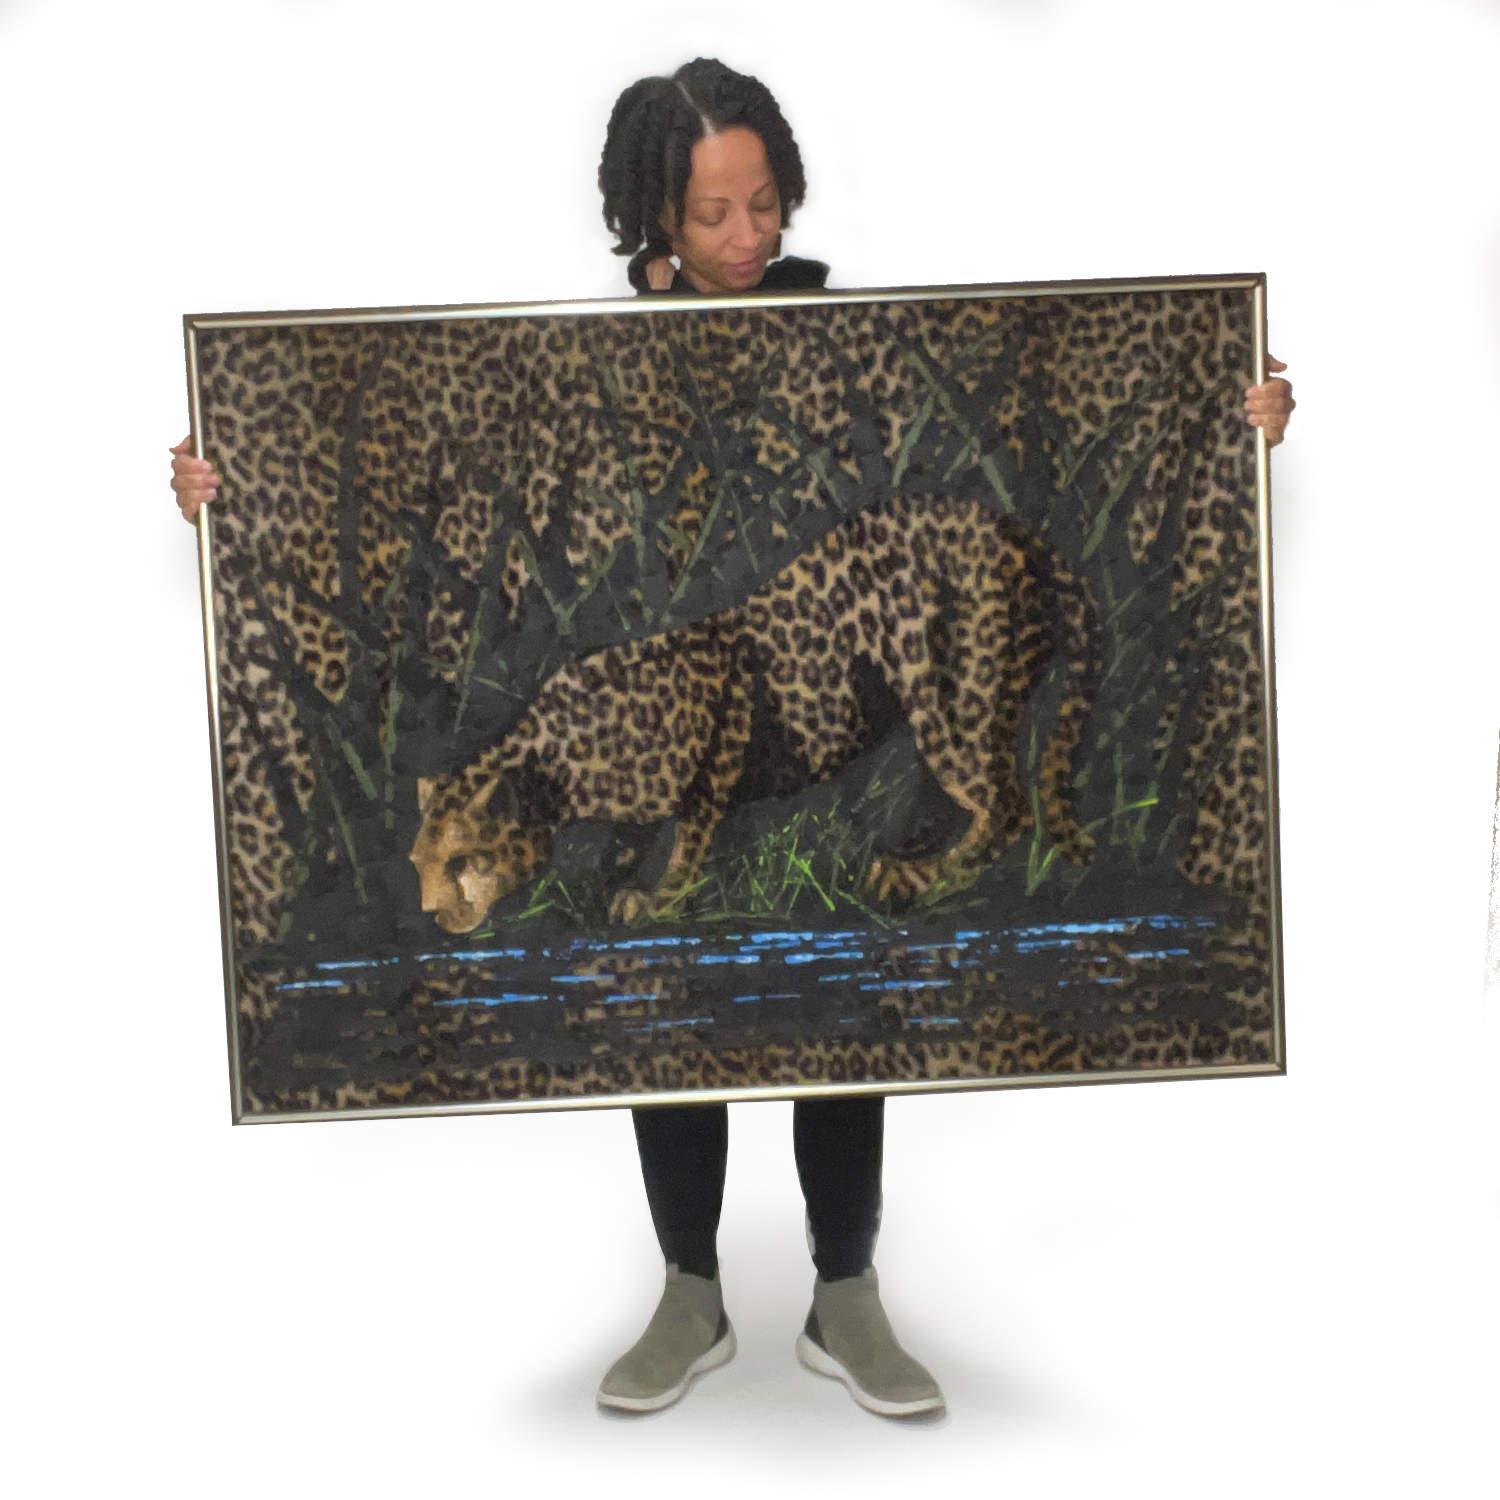 Vous avez peut-être vu des peintures sur velours... mais avez-vous vu une peinture de léopard sur de la fausse fourrure ? Ce tableau vintage des années 1970 représentant un gros chat utilise de la fausse fourrure de léopard comme toile. Signé